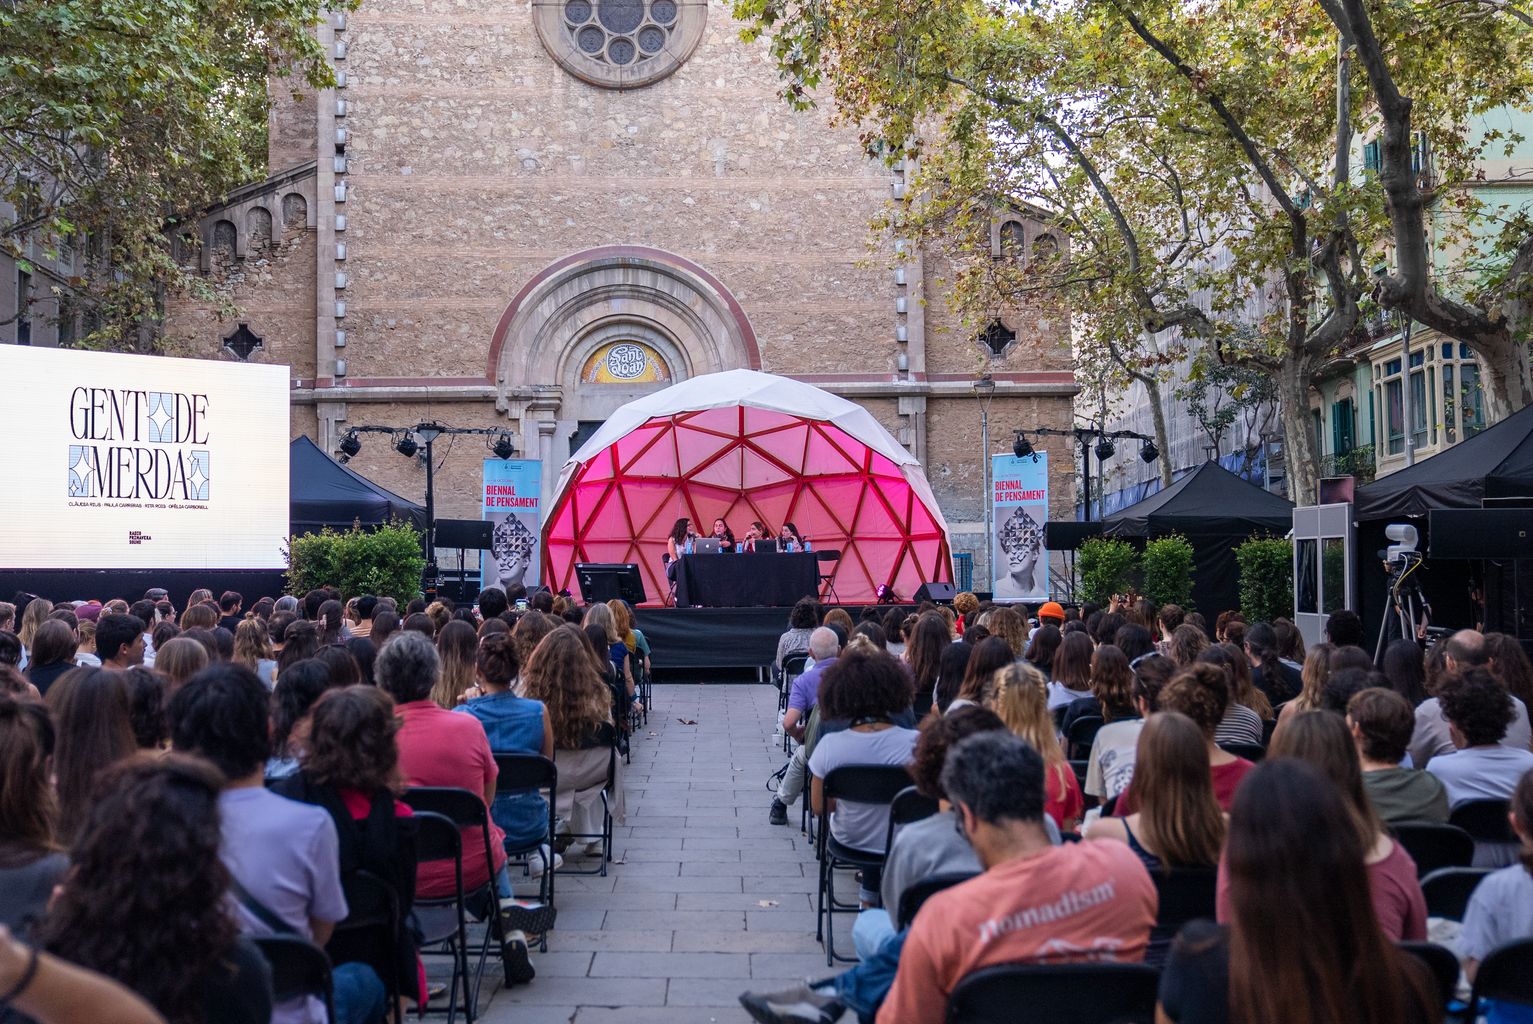 Pla general de la xerrada la xerrada "Biennal. Viure a Barcelona: Gent de merda en directe", amb Clàudia Rius, Paula Carreras, Rita Roig i Ofèlia Carbonell a la plaça de la Virreina amb el públic assistent escoltant atentament